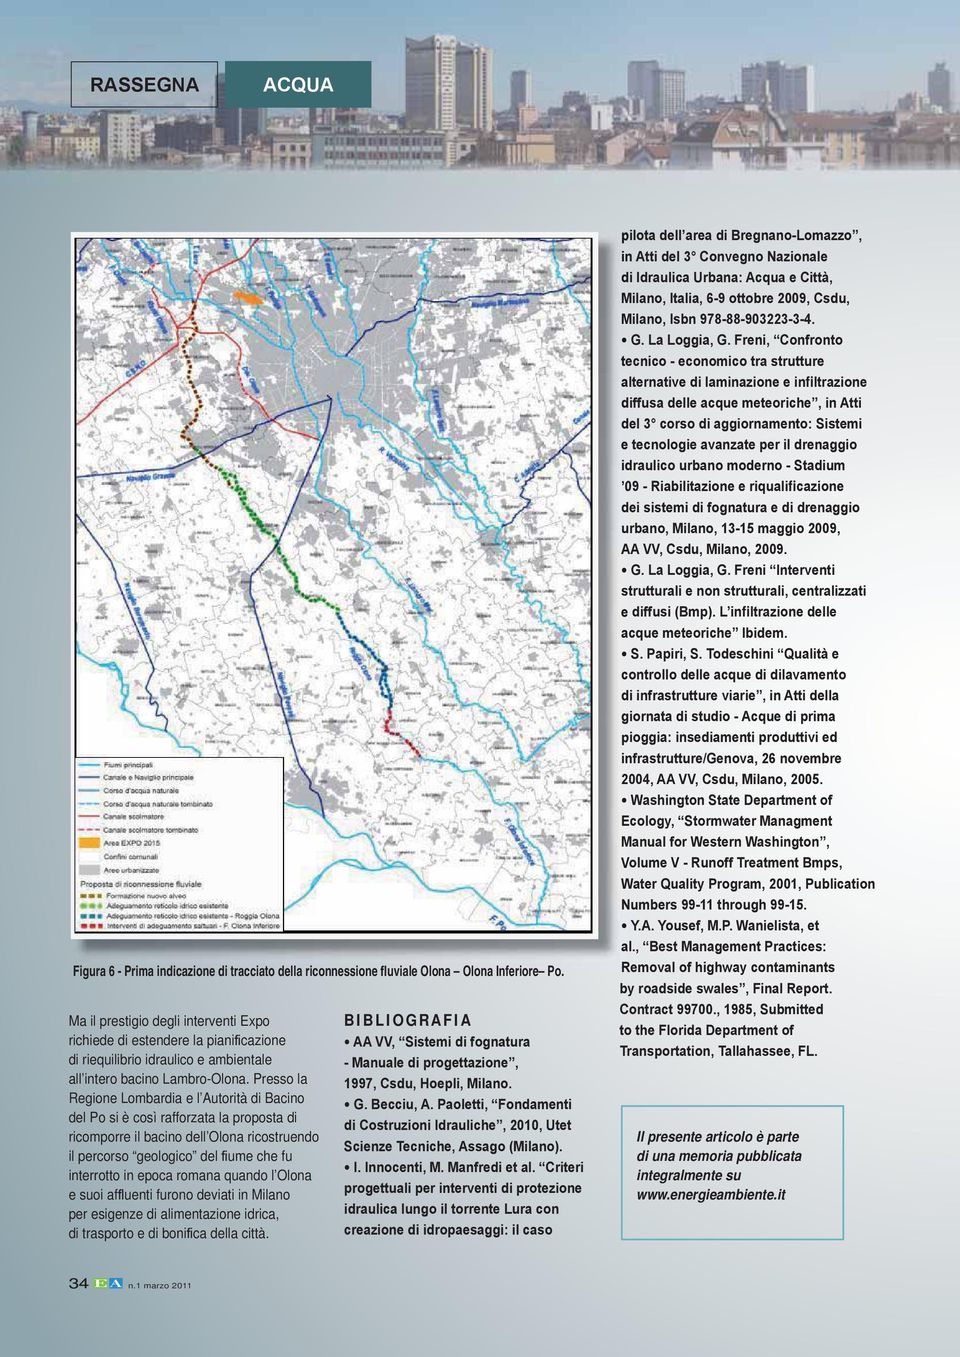 Presso la Regione Lombardia e l Autorità di Bacino del Po si è così rafforzata la proposta di ricomporre il bacino dell Olona ricostruendo il percorso geologico del ume che fu interrotto in epoca